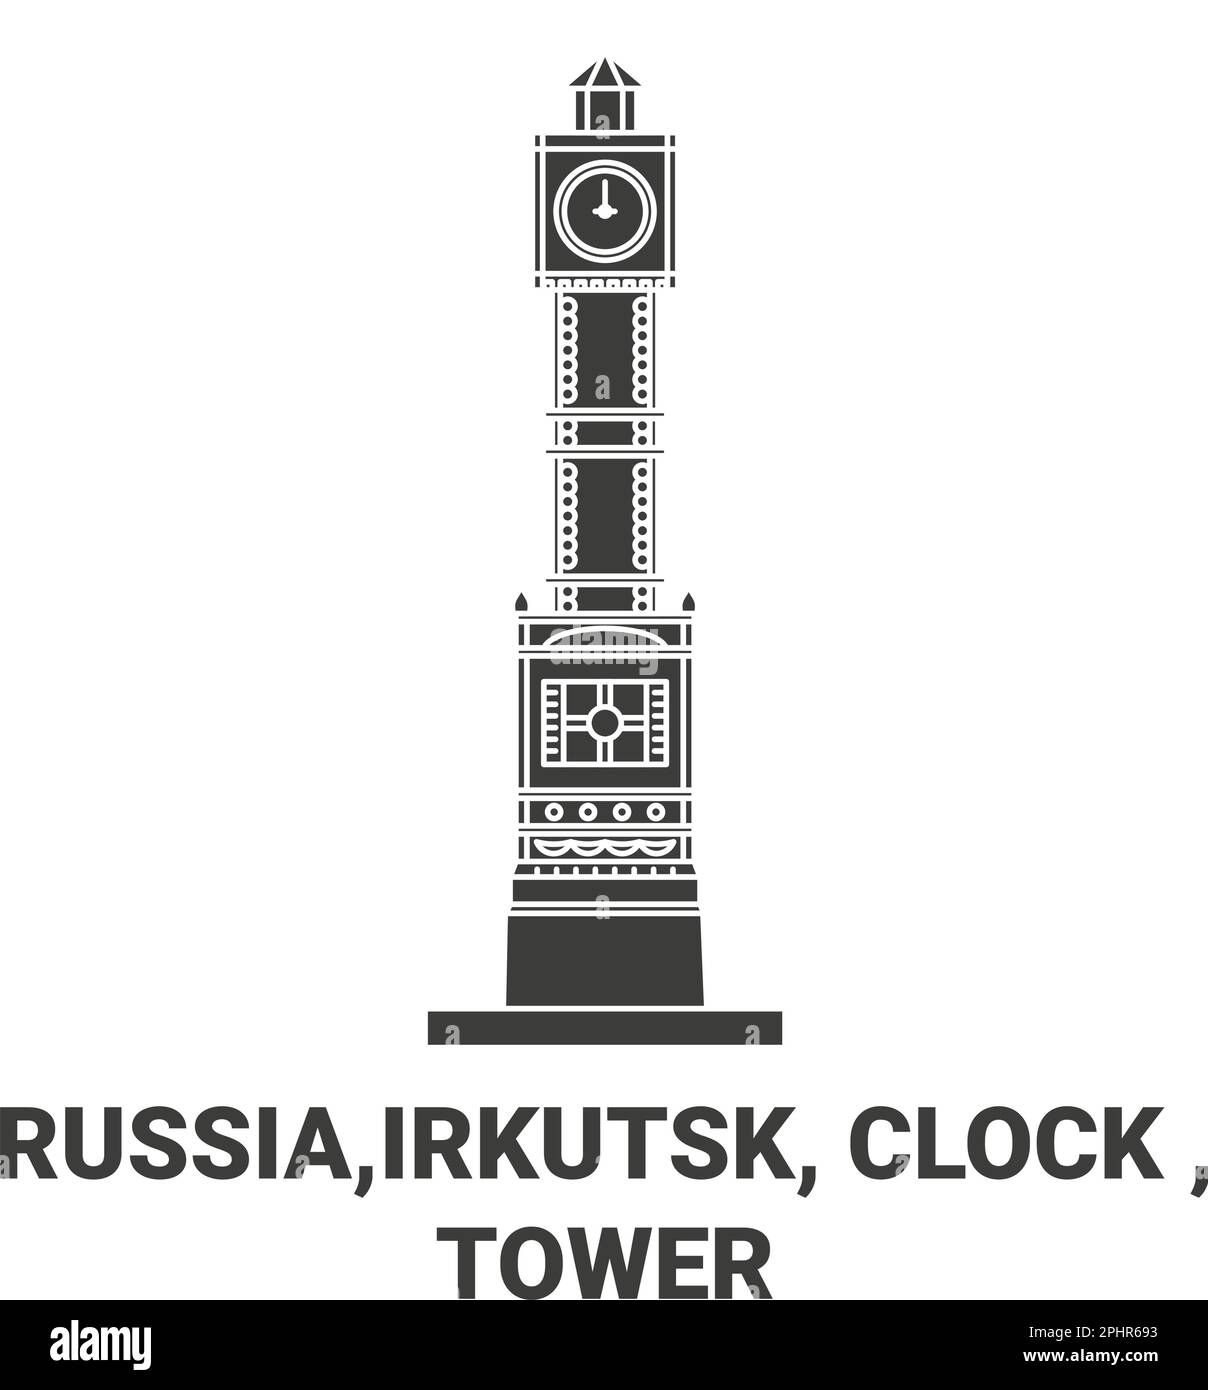 Russland, Irkutsk, Uhr, Tower Reise-Wahrzeichen-Vektordarstellung Stock Vektor